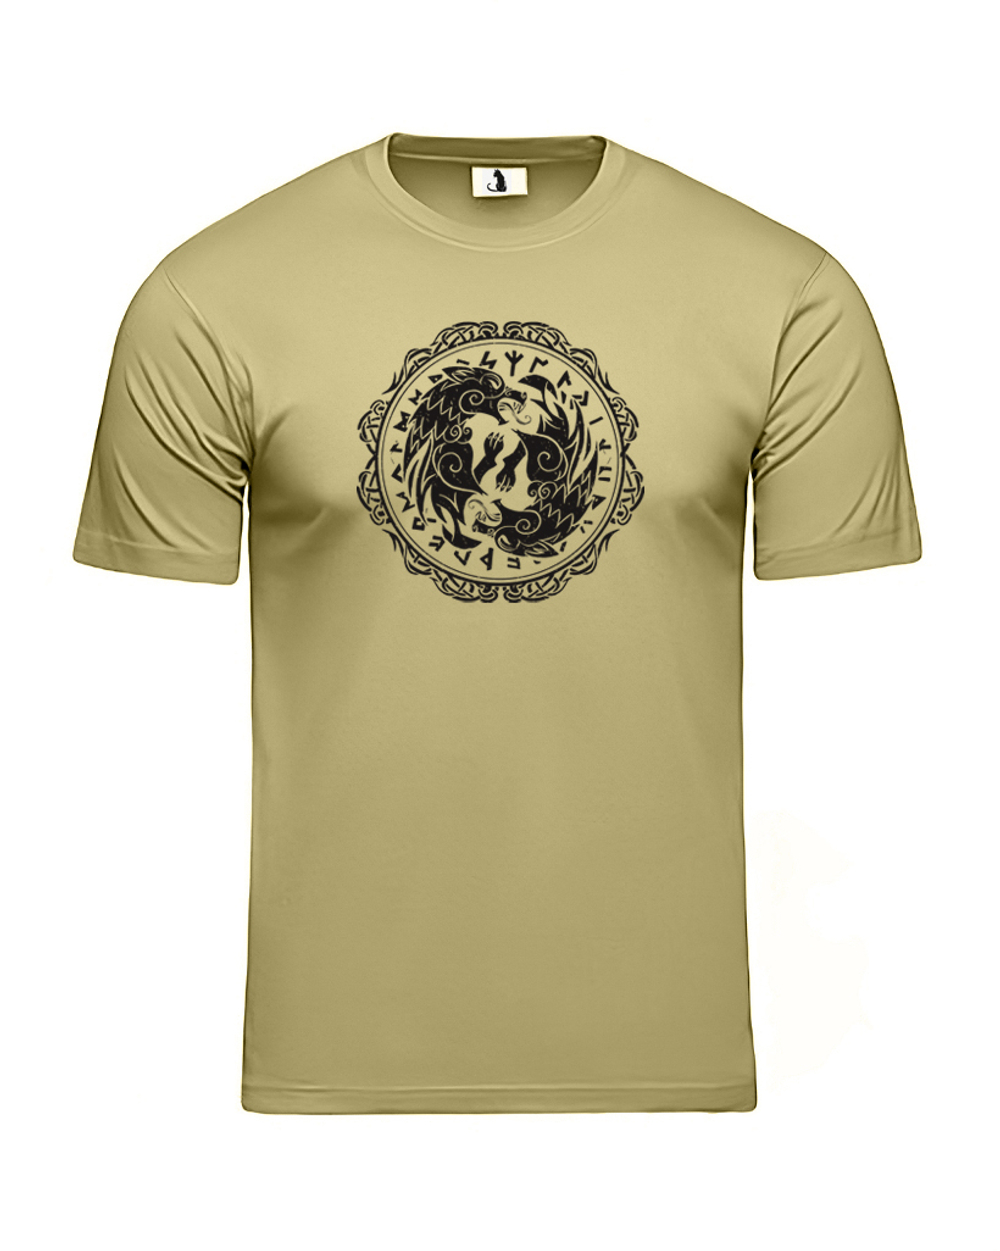 Скандинавская футболка с волком и рунами unisex оливковая с черным рисунком